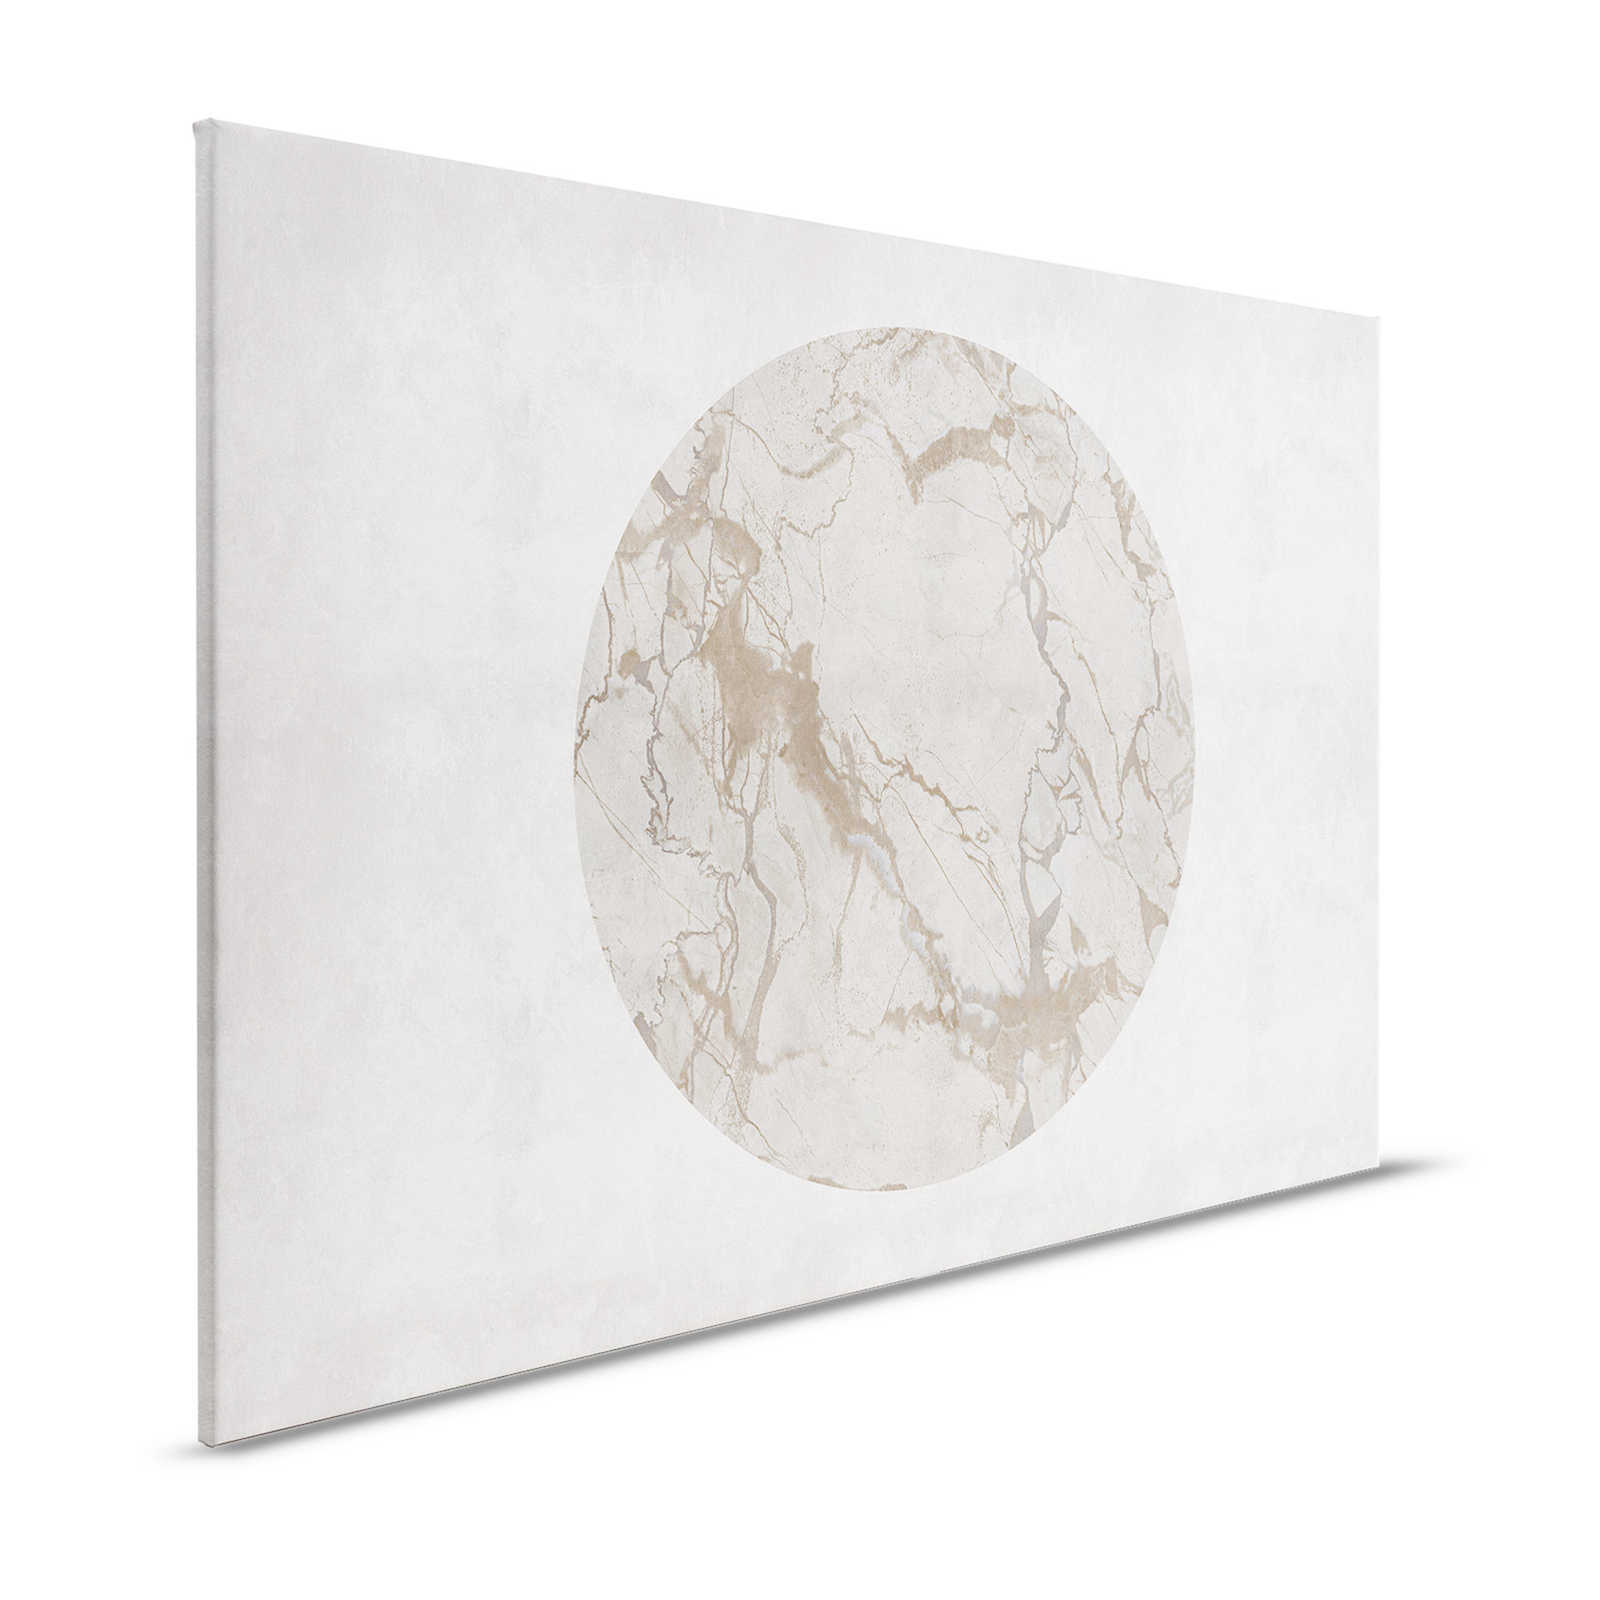 Mercurio 2 - Quadro su tela effetto pietra greige con effetto marmo - 1,20 m x 0,80 m
